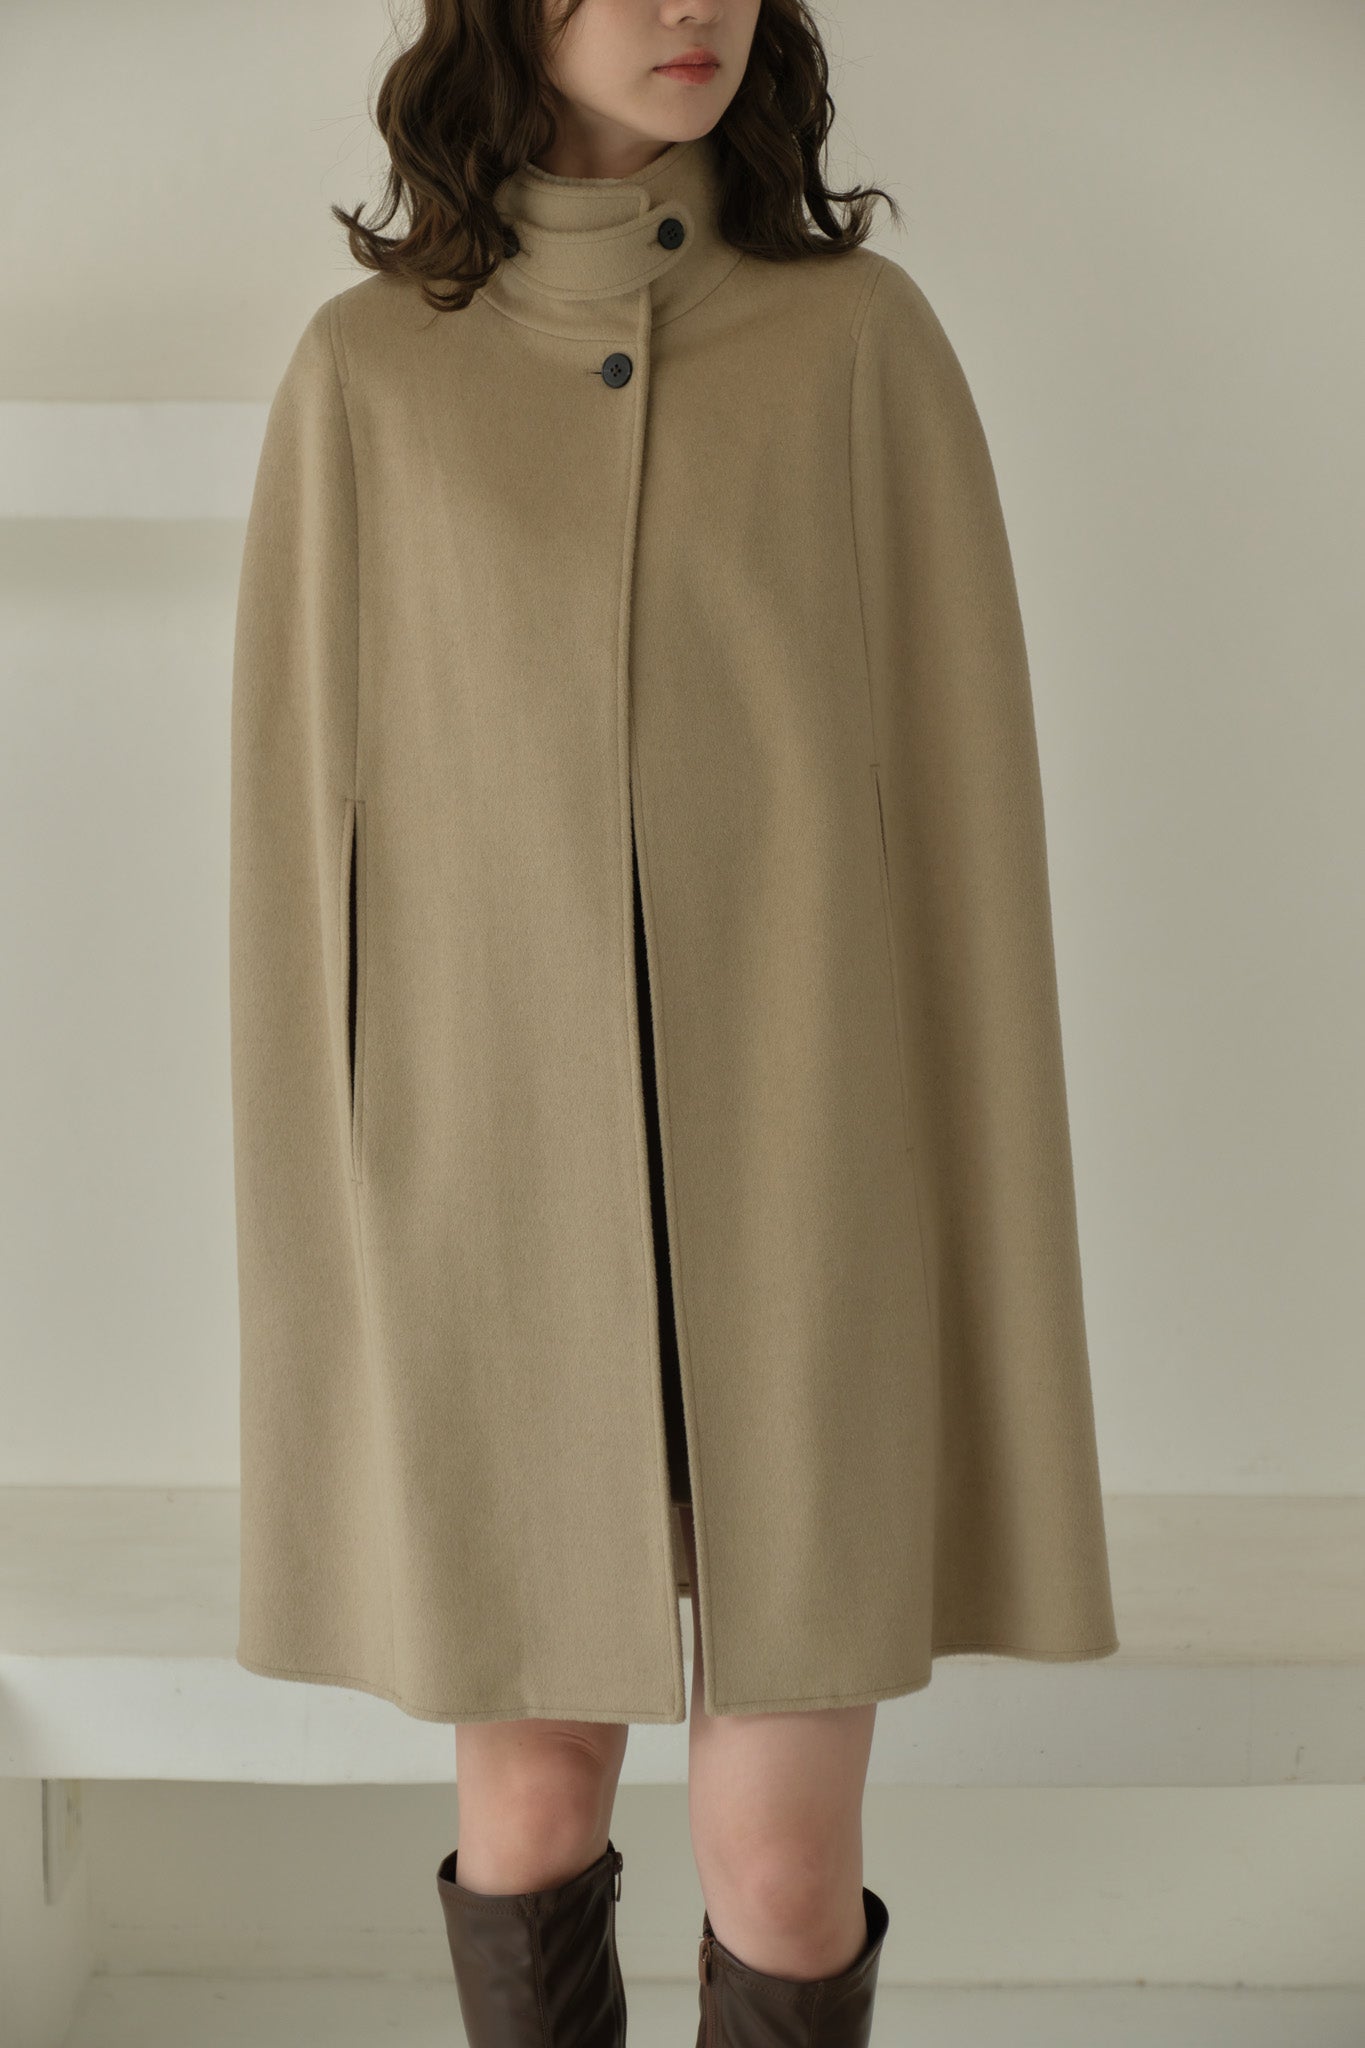 9,900円Eaphi high neck wool cape coat ケープコート